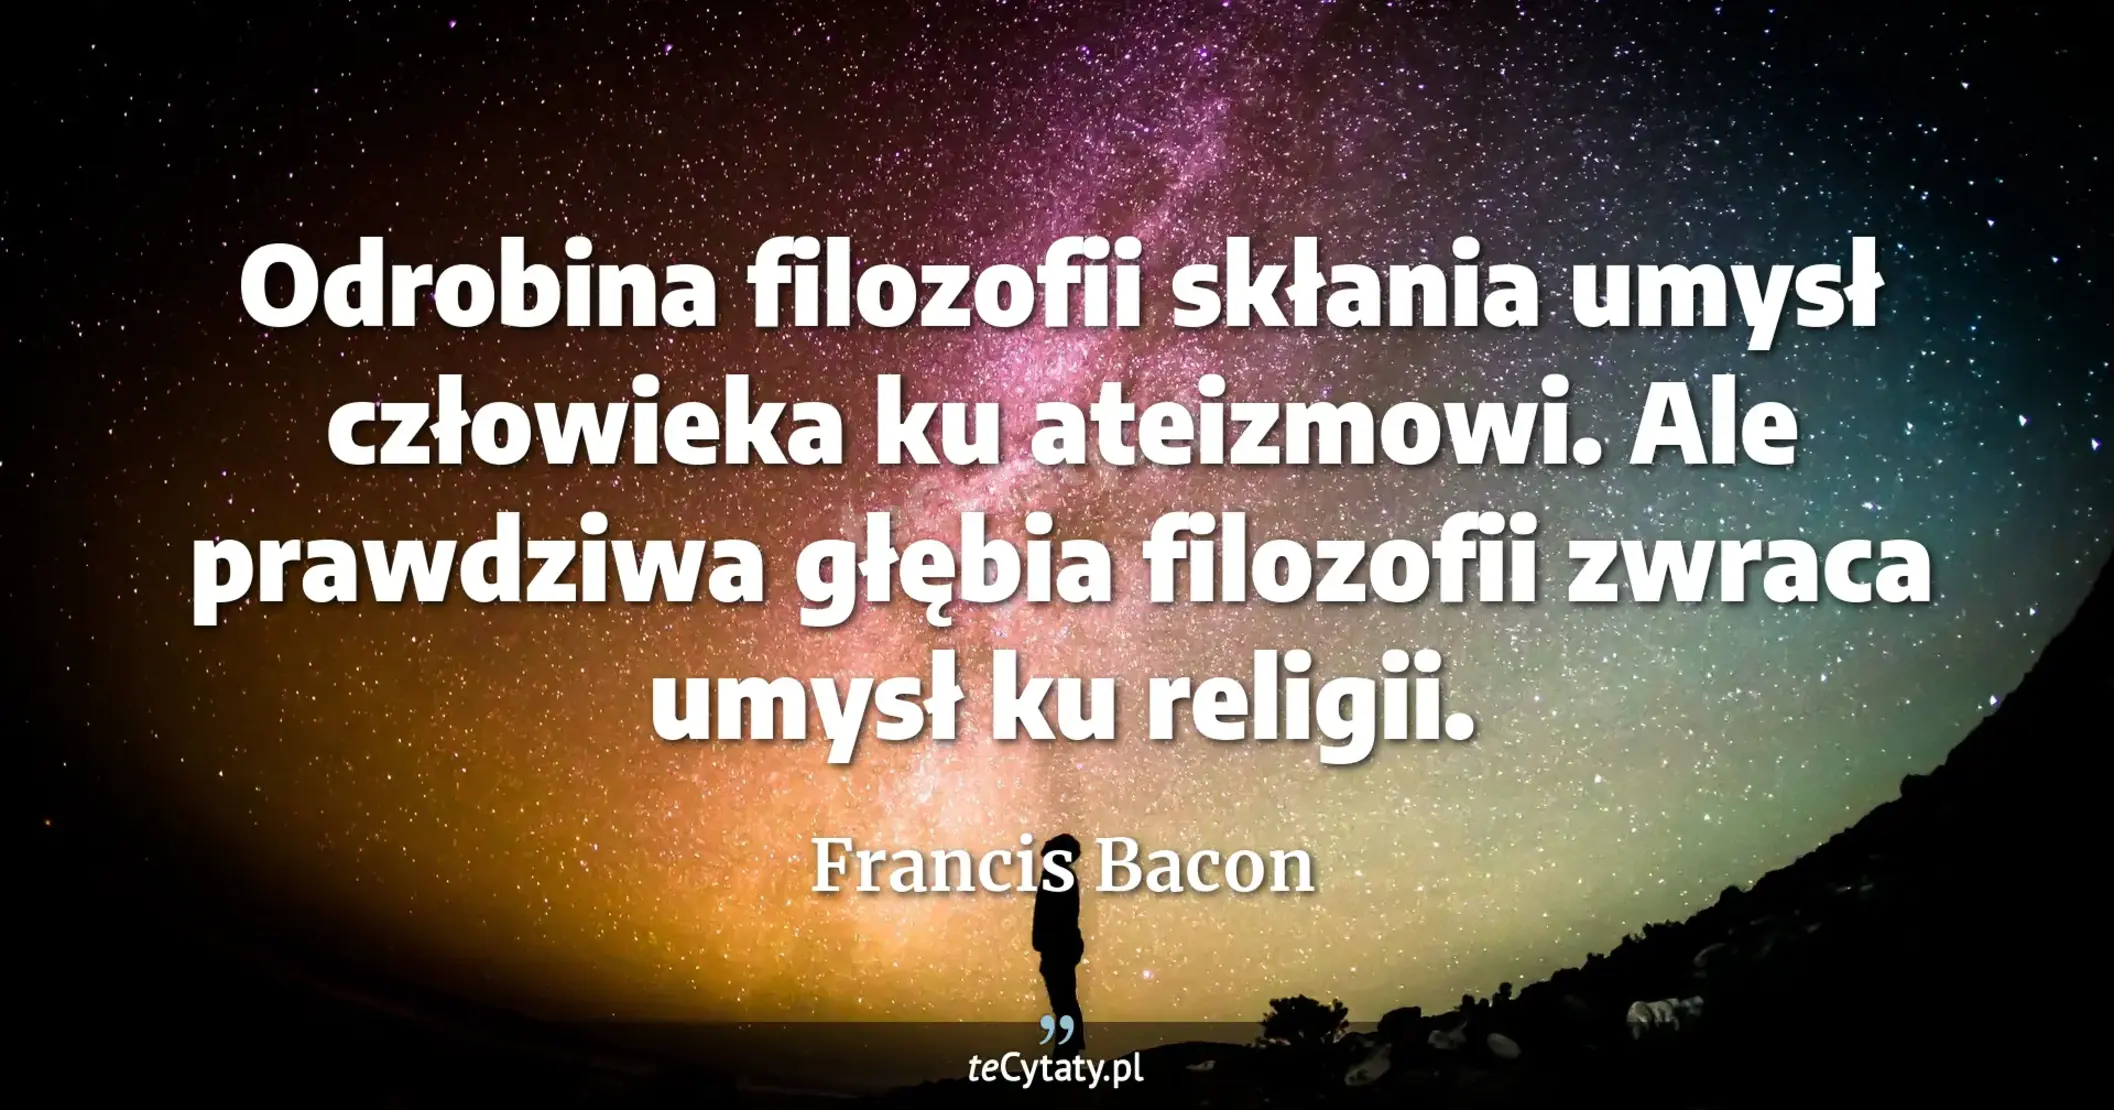 Odrobina filozofii skłania umysł człowieka ku ateizmowi. Ale prawdziwa głębia filozofii zwraca umysł ku religii. - Francis Bacon